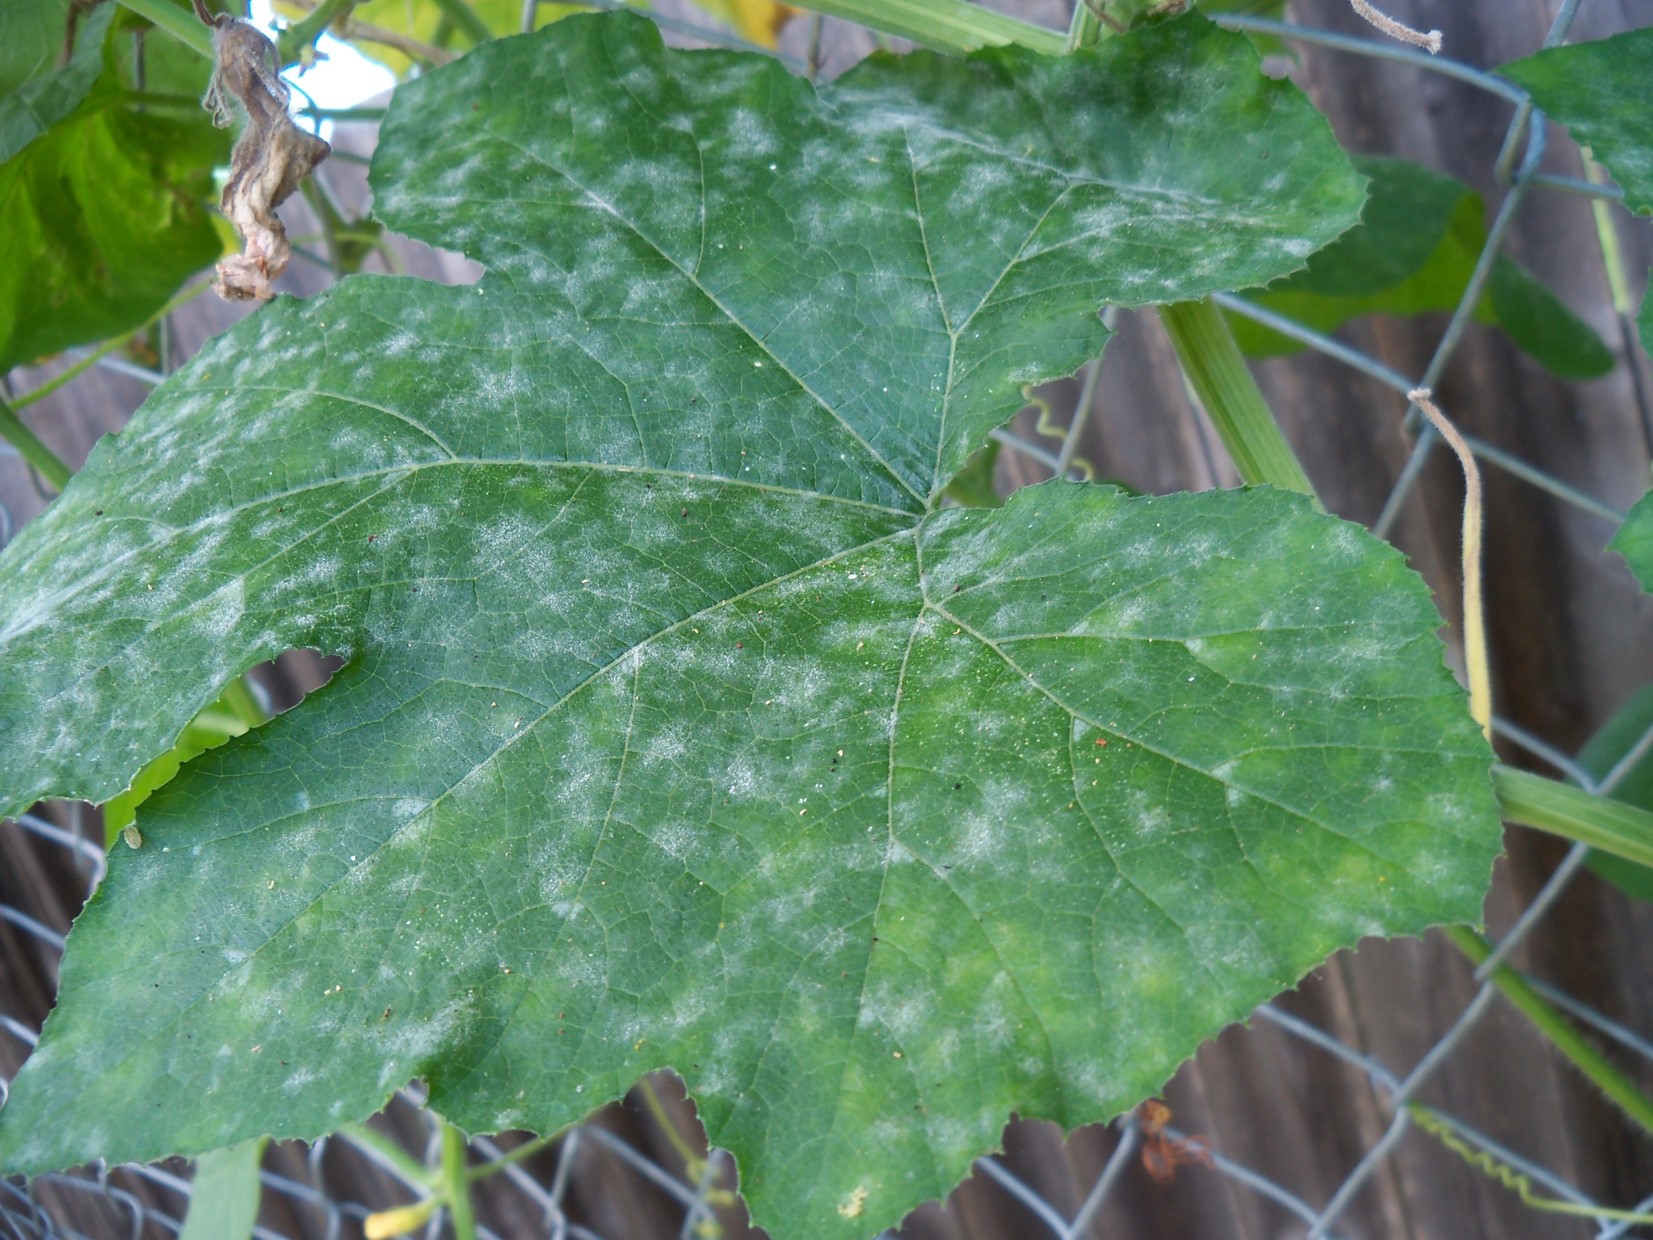 Powdery mildew on cucurbit leaf